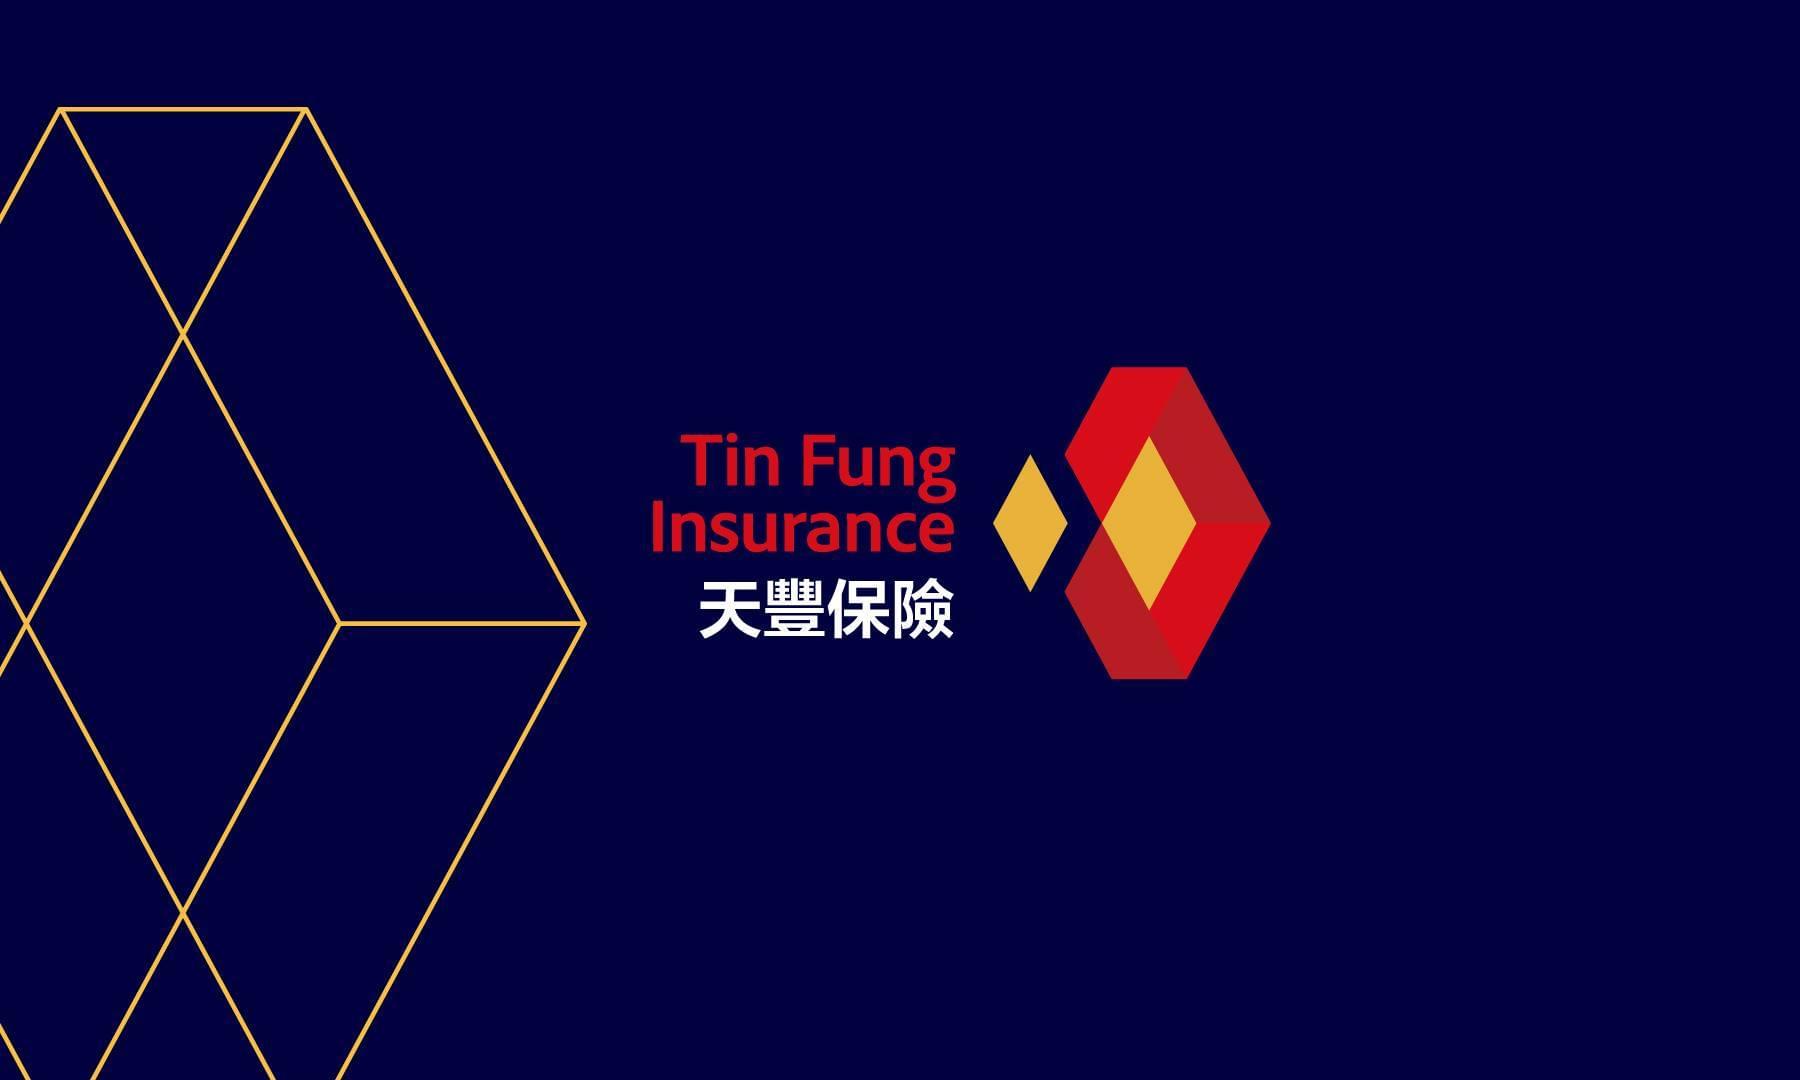 天豐保險 | Tin Fung Insurance